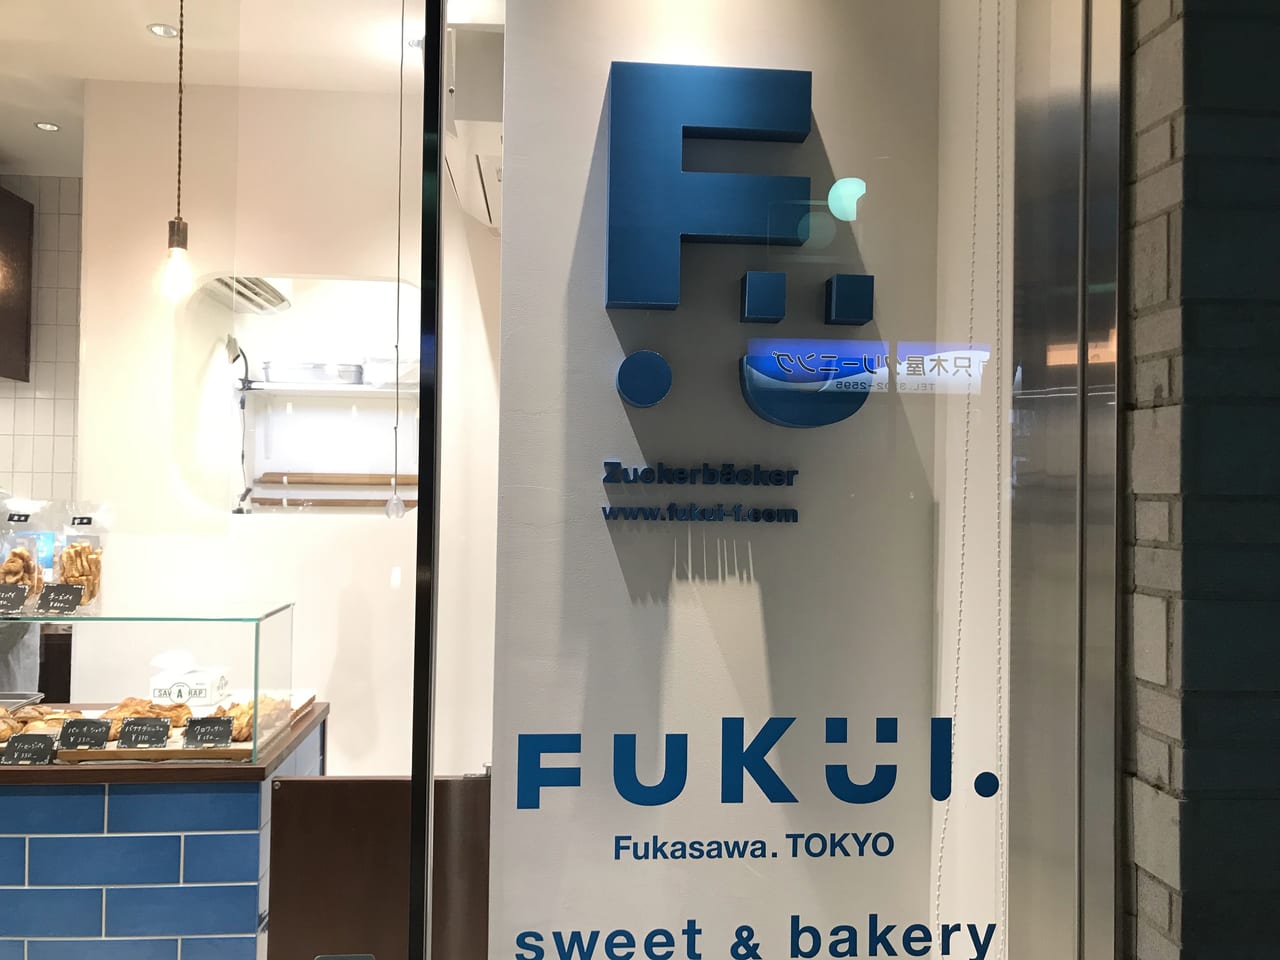 世田谷区深沢のuckerbackerFukuiツッカーベッカー・フクイ は焼き菓子専門店として生まれ変わりました。渋谷区広尾で５０年間、東京フロインドリーブを2020年閉店。